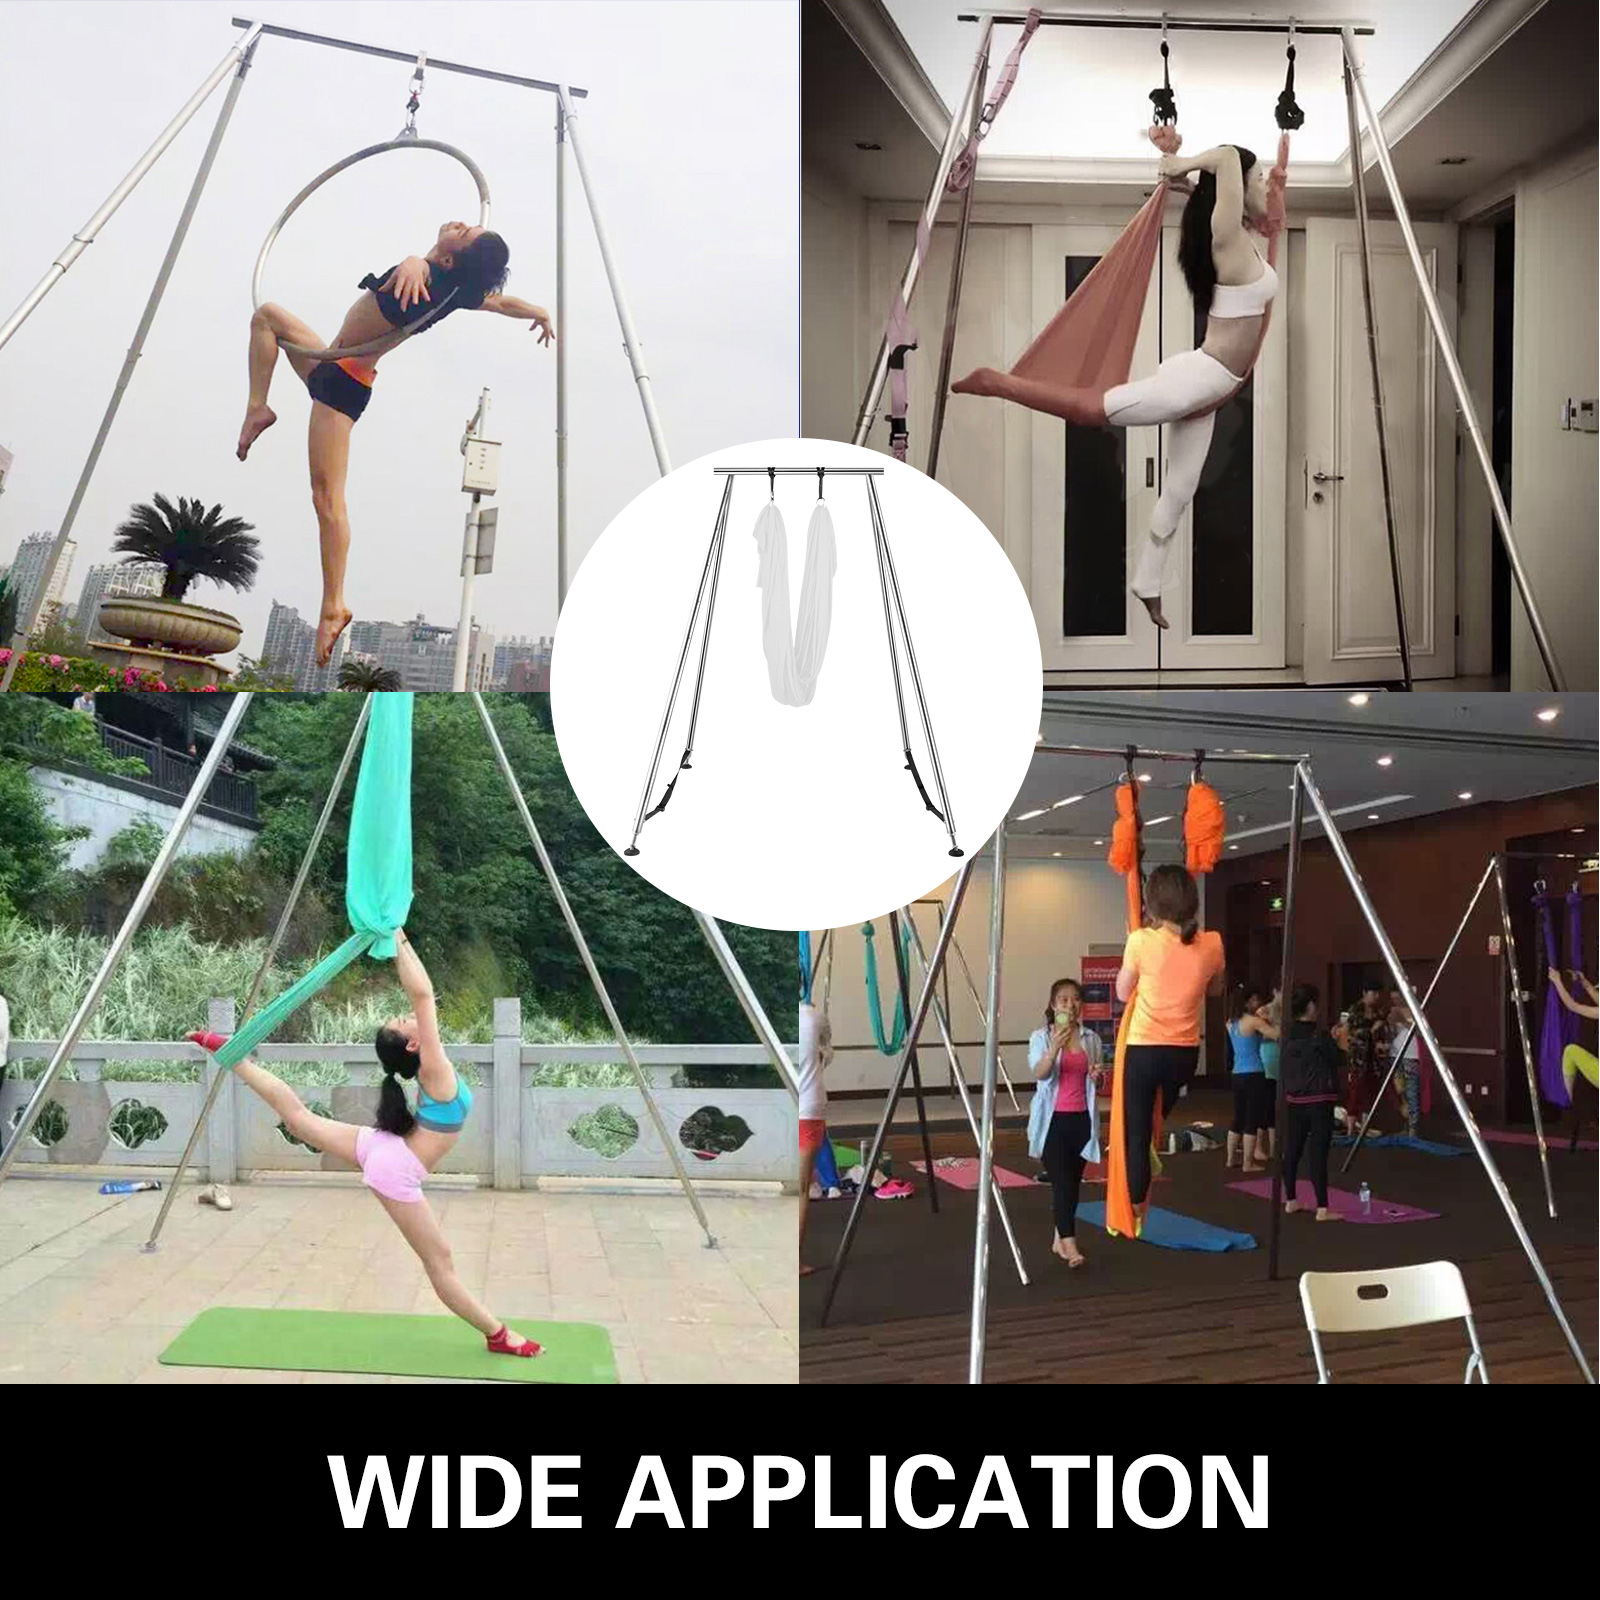 B4 - Sangle de Yoga aérien réglable, élastique, porte de hamac, balançoire,  équipement'entraînement pour femm